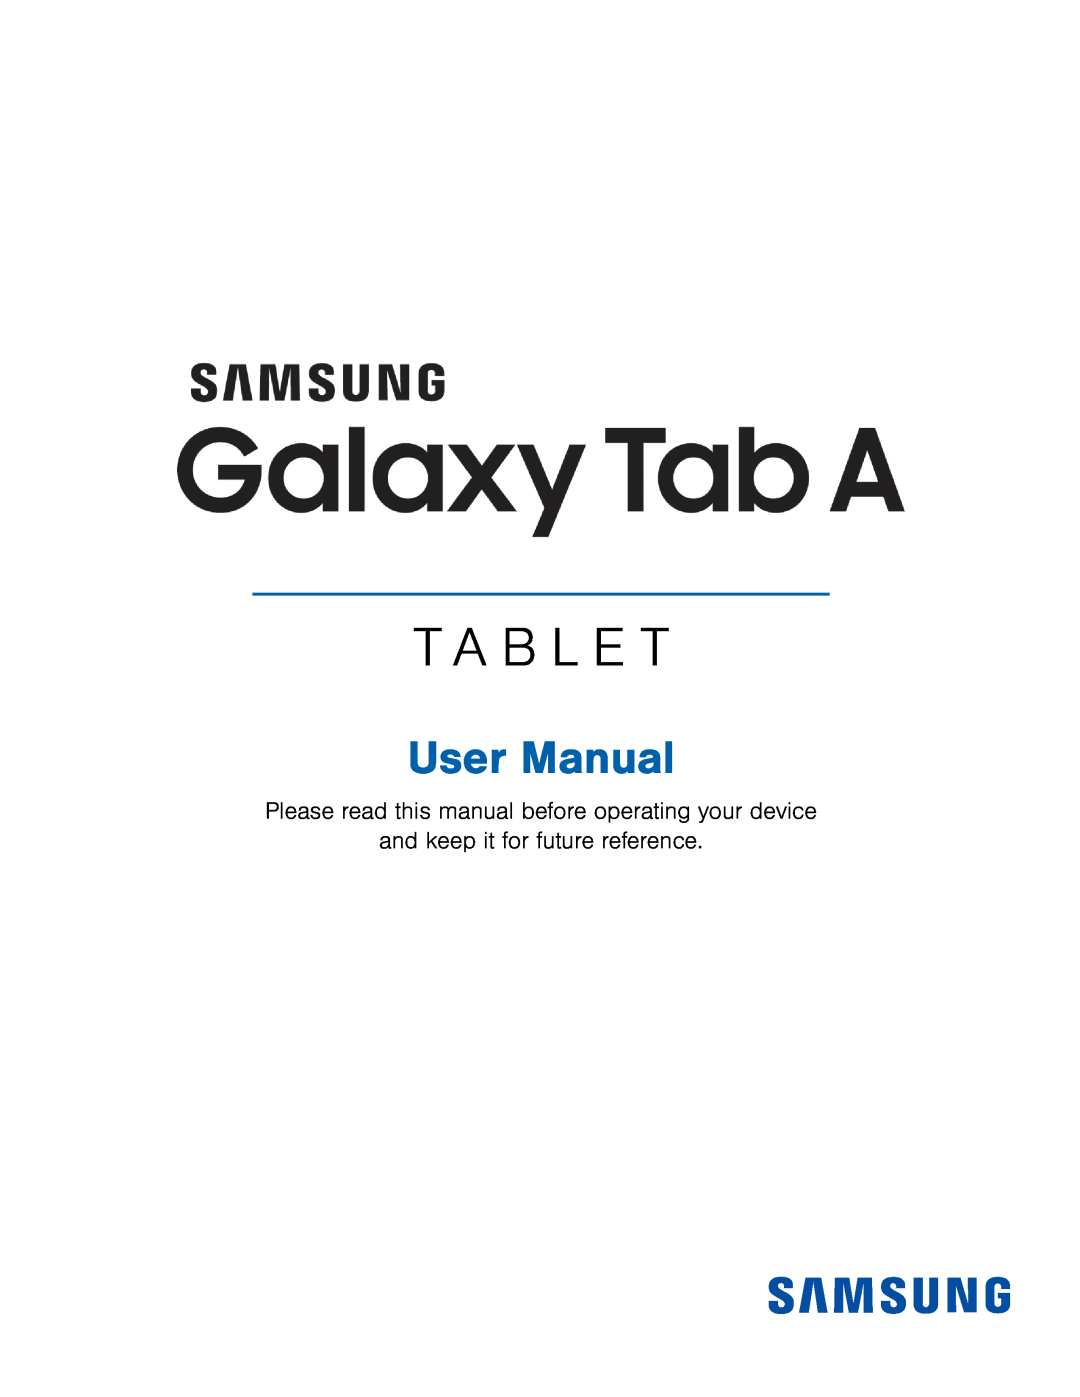 Galaxy Tab A 7.0 Wi-Fi SM-T280NZWAXAR